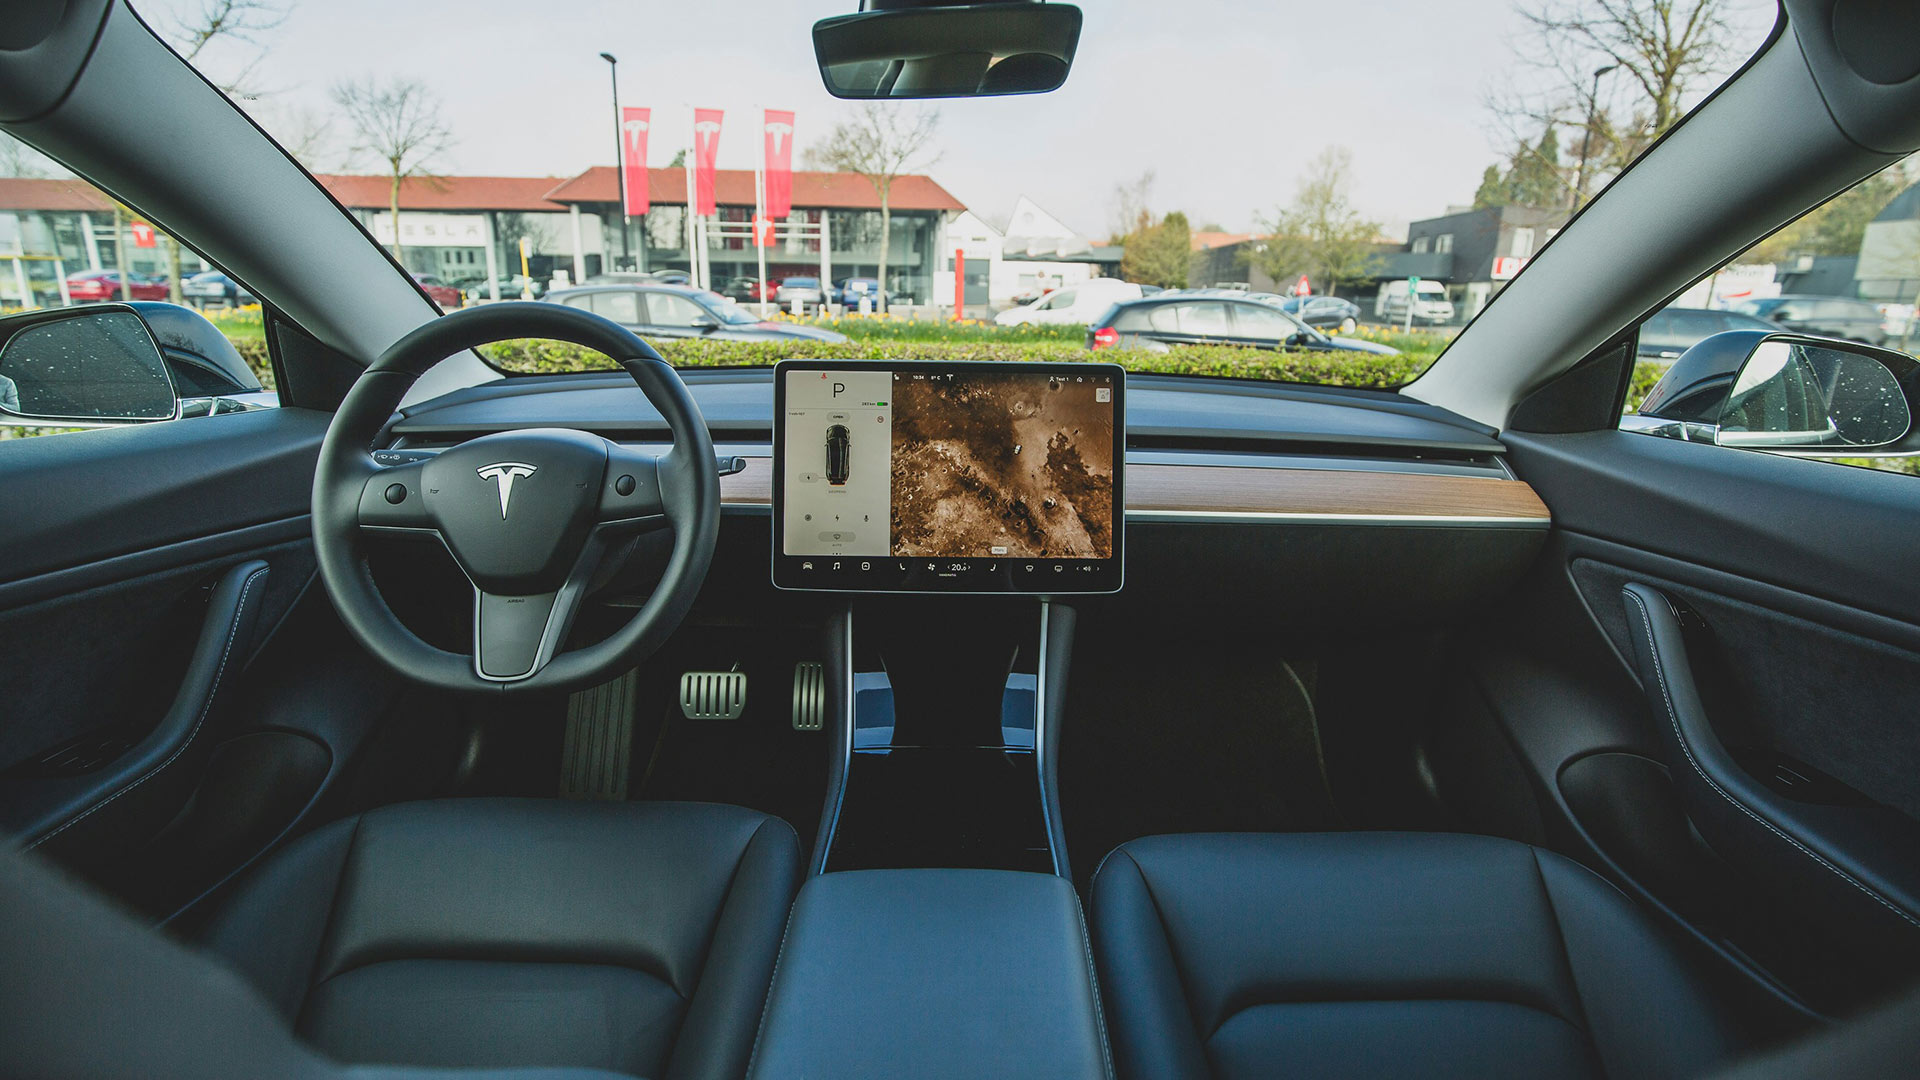 Tesla Robotaxi Article - MAT Foundry